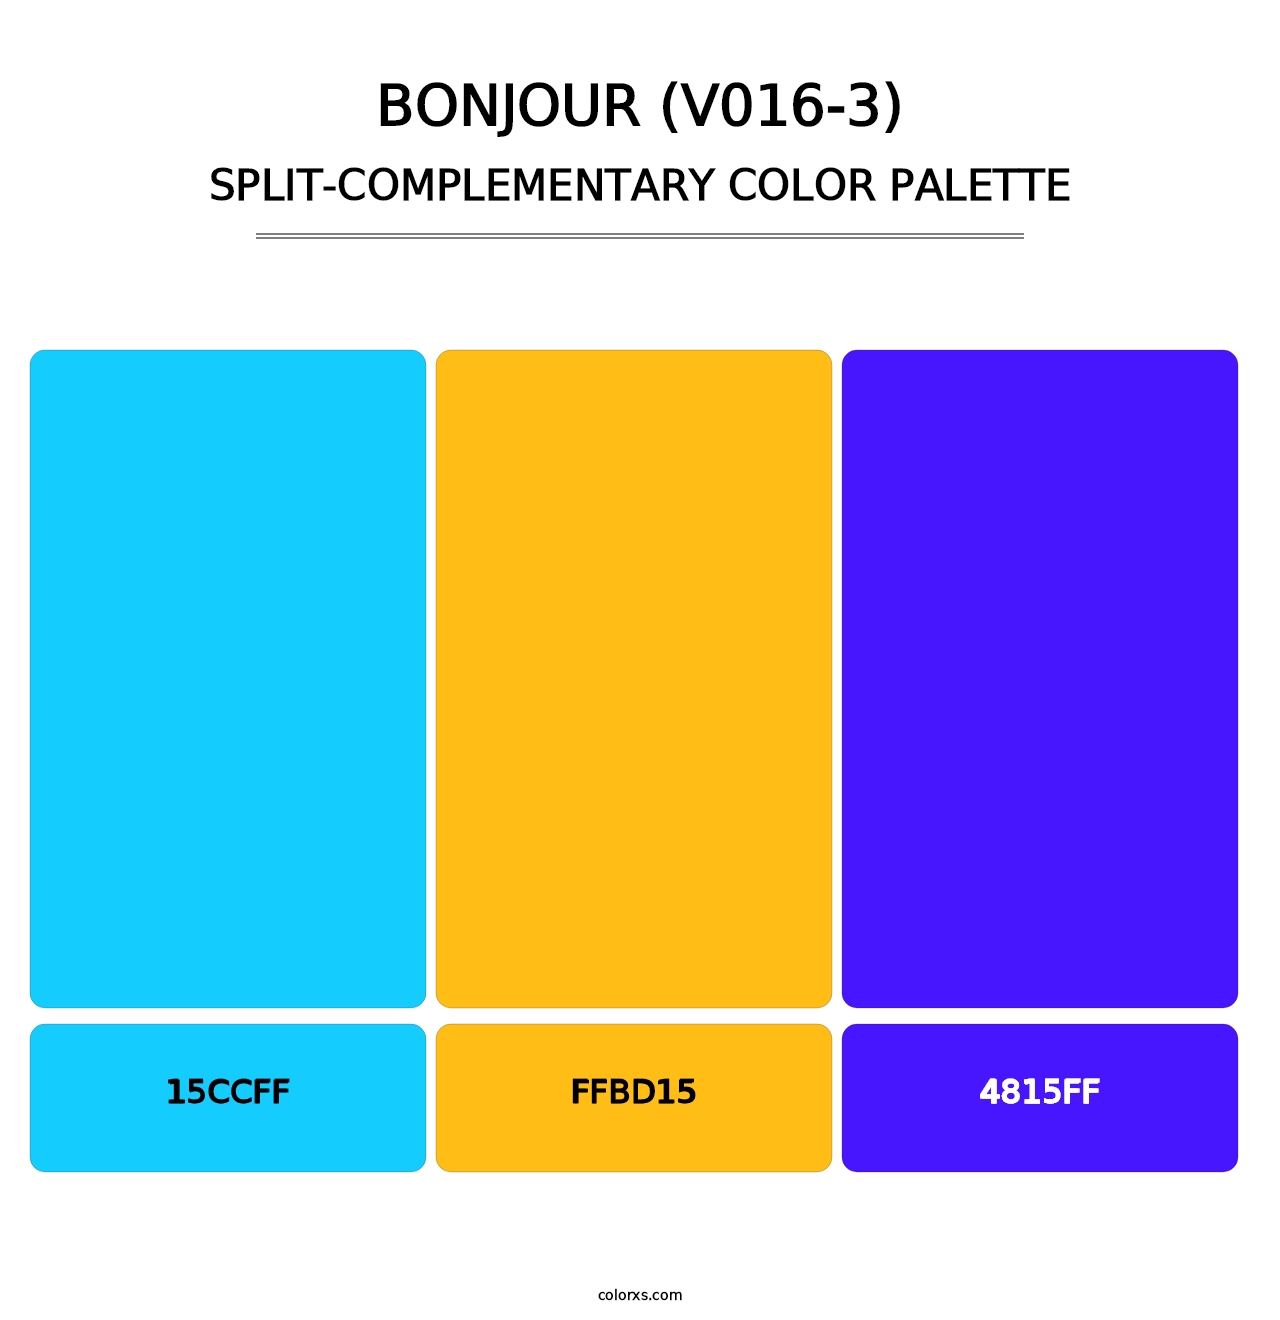 Bonjour (V016-3) - Split-Complementary Color Palette